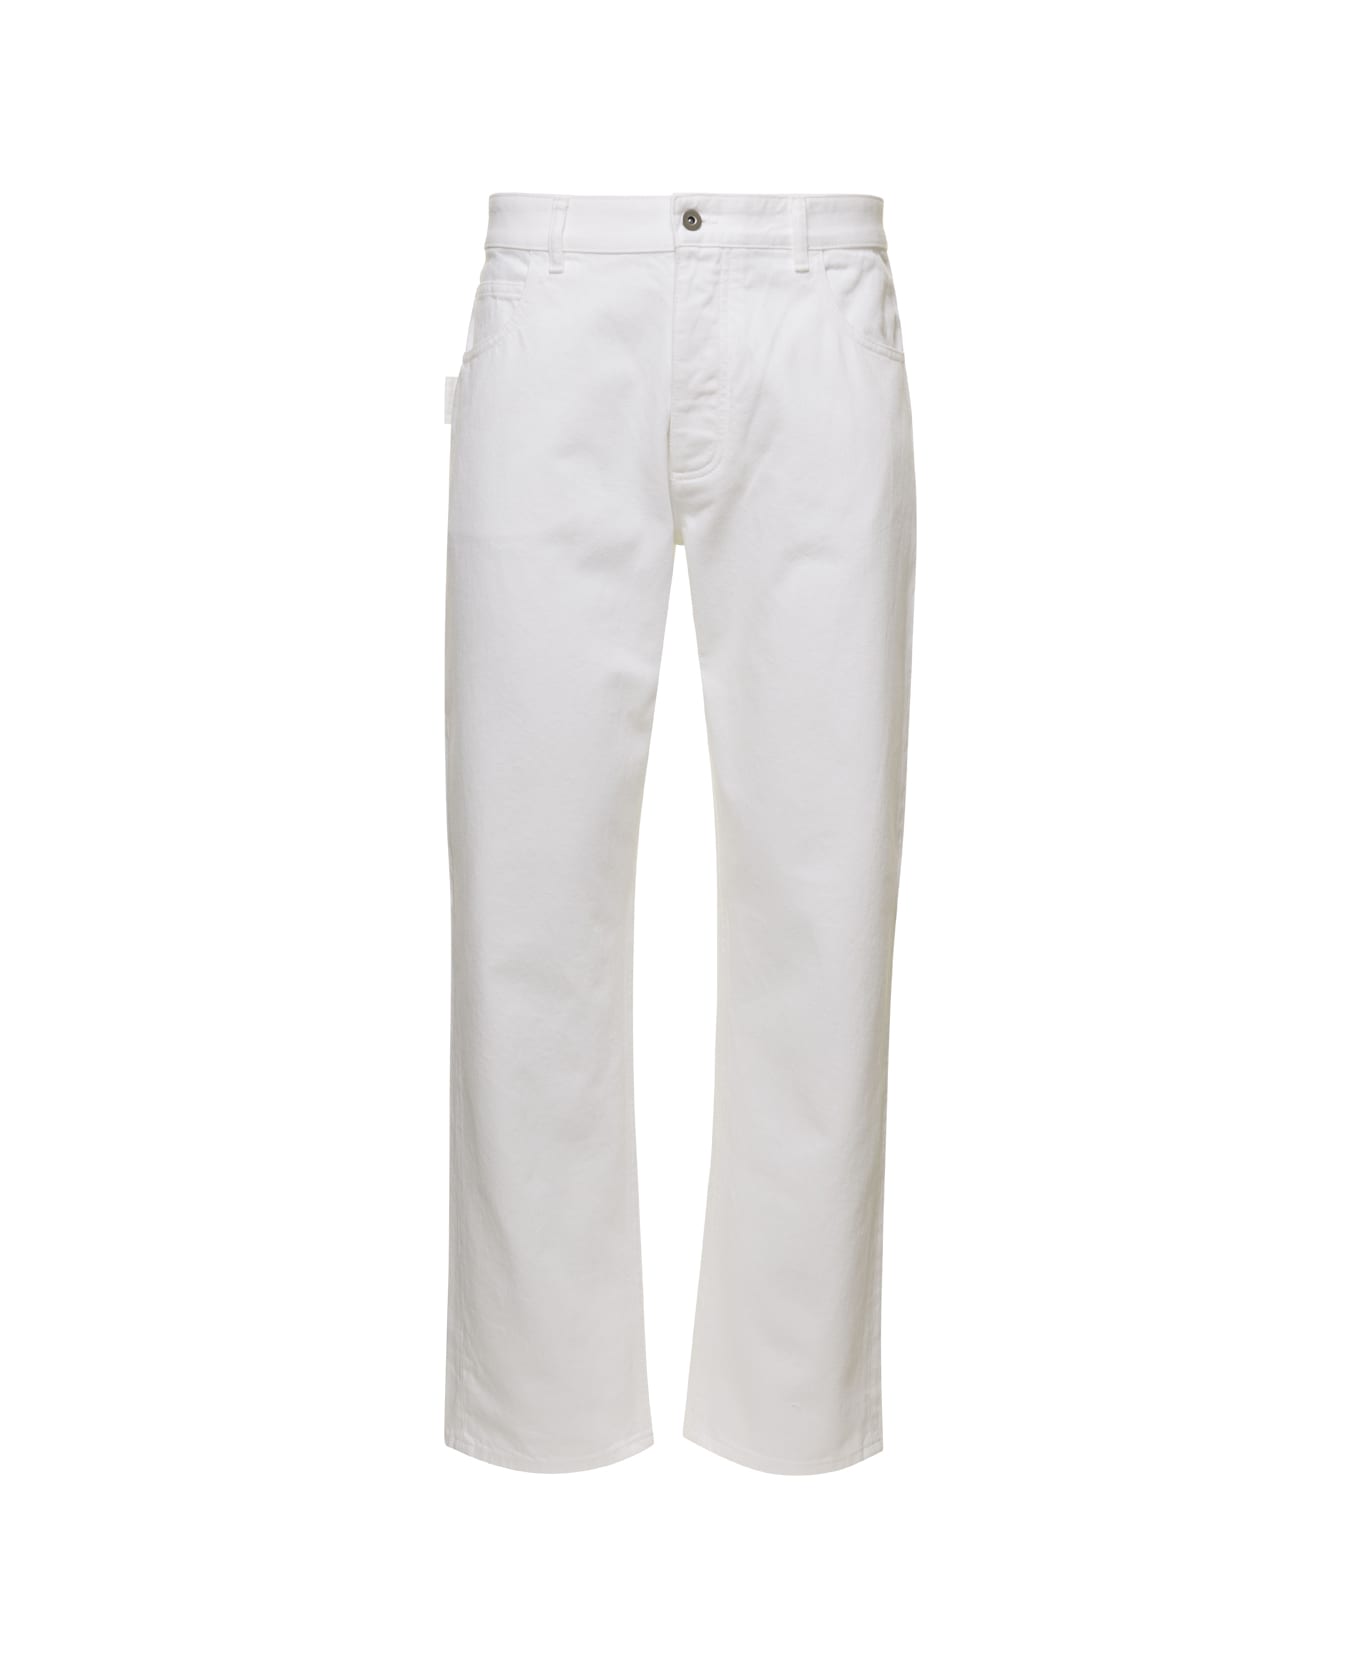 Bottega Veneta Denim Jeans - White ボトムス